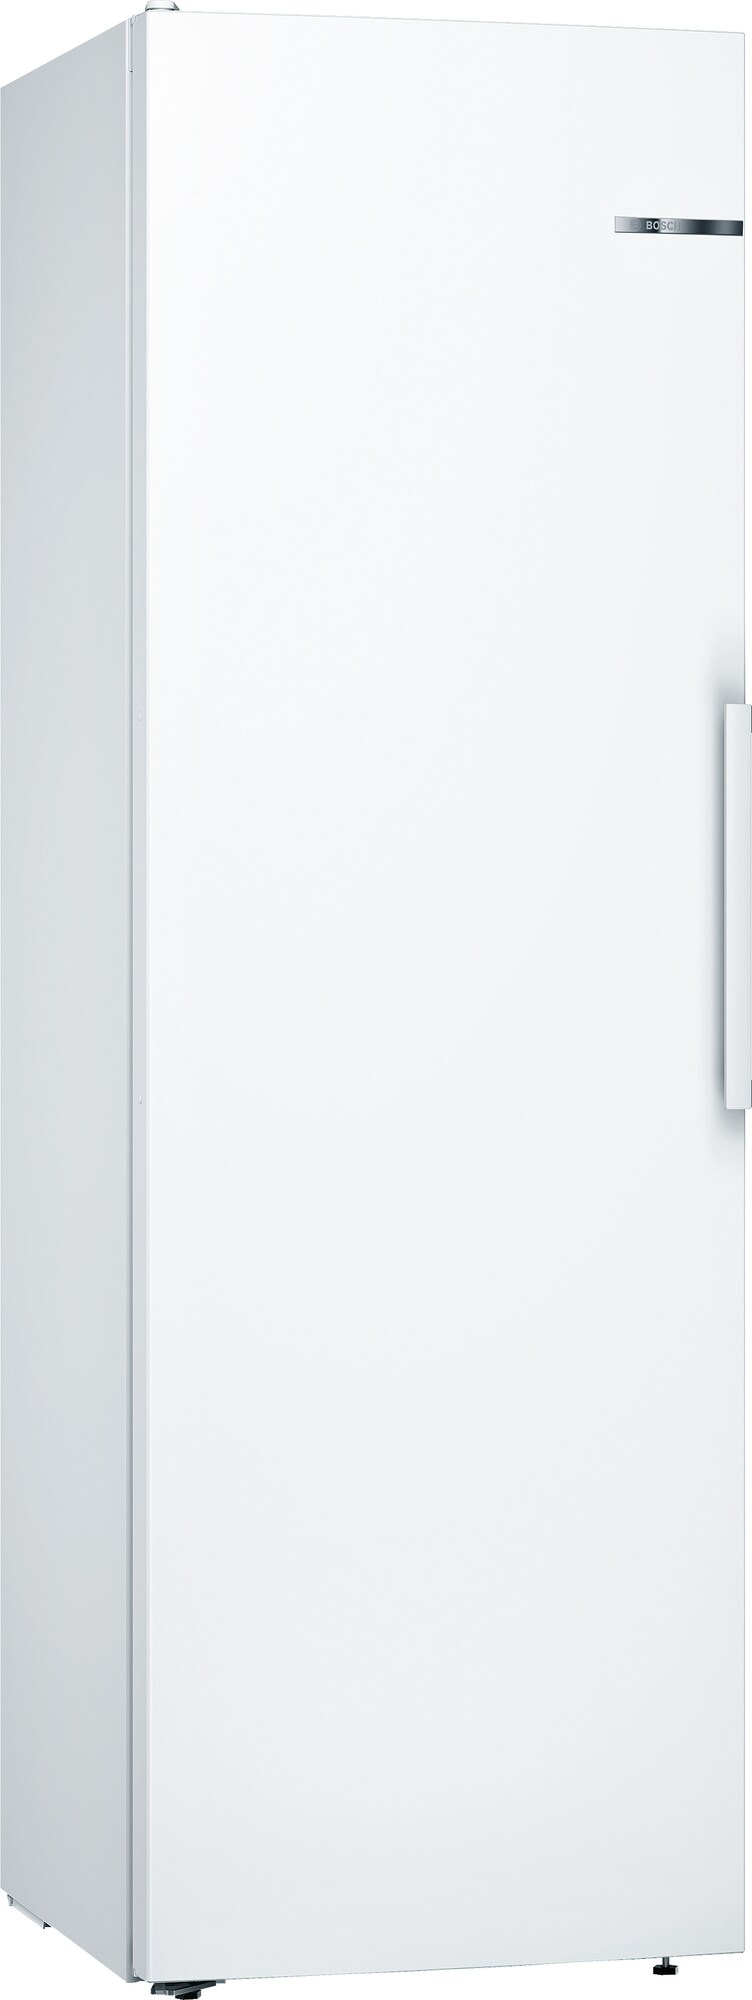 Billede af Bosch køleskab KSV36VWEP (hvid)